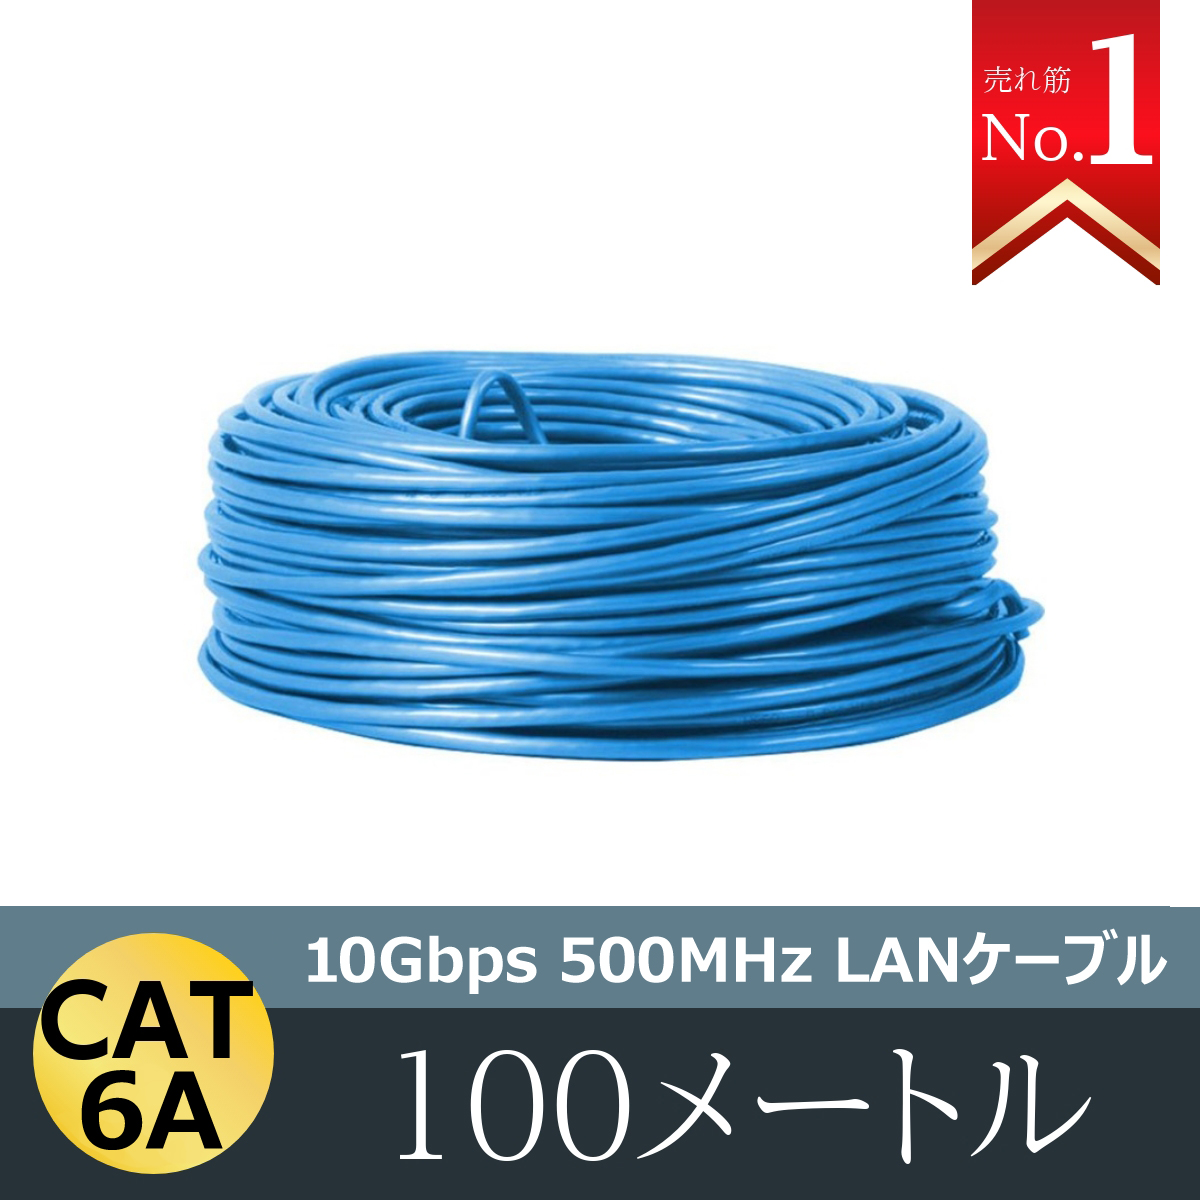 LANケーブル 300m 1巻 CAT 6A 10Gbps 500MHz 光回線